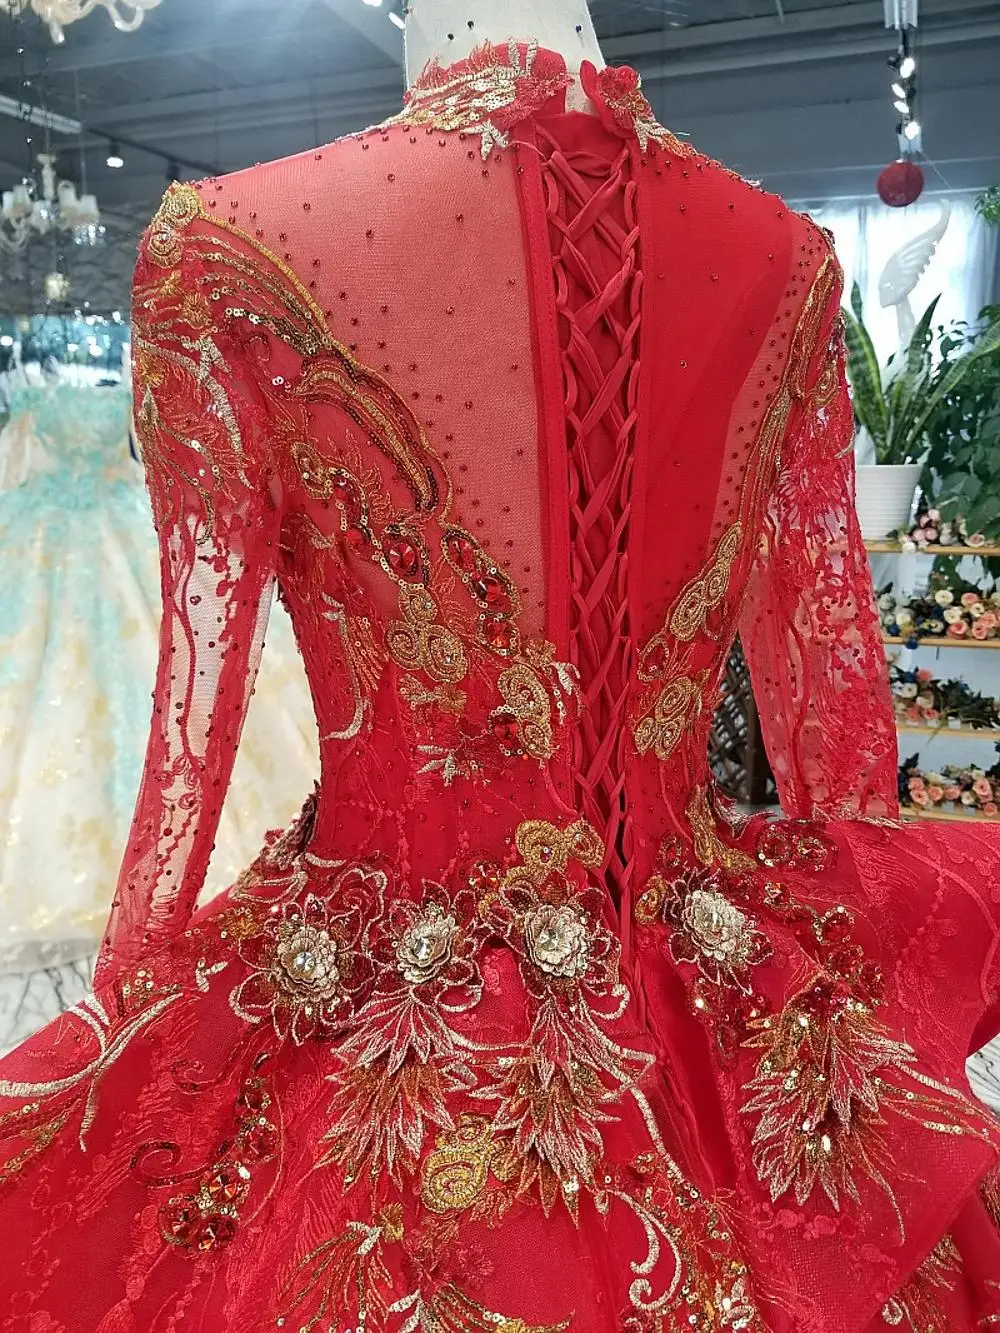 Backlakegirls Винтаж бальное платье красного цвета свадебное платье принцессы золотого цвета с аппликацией и длинным рукавом многослойная